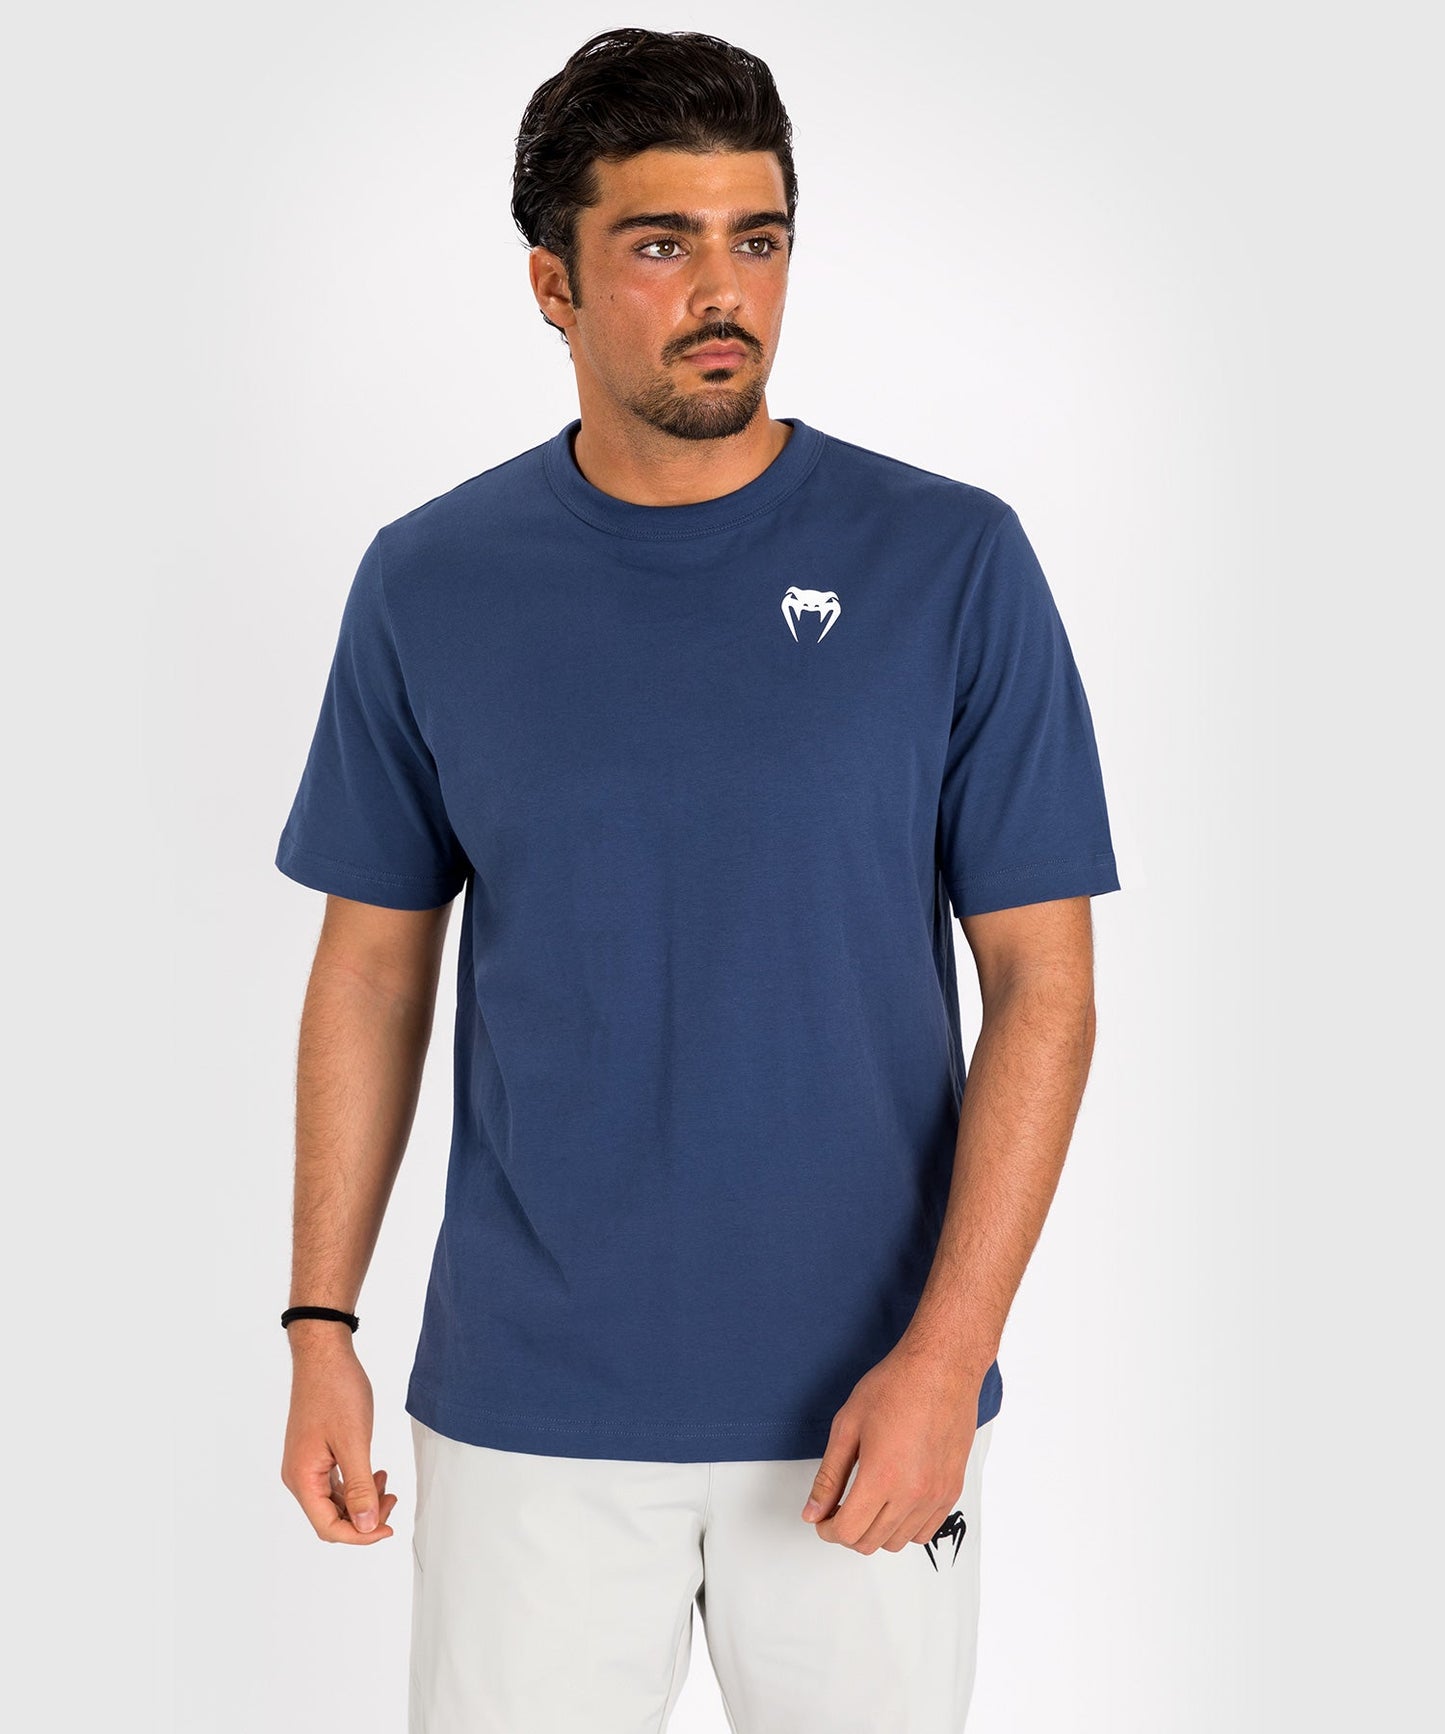 Venum Strikeland T-Shirt - Marineblau